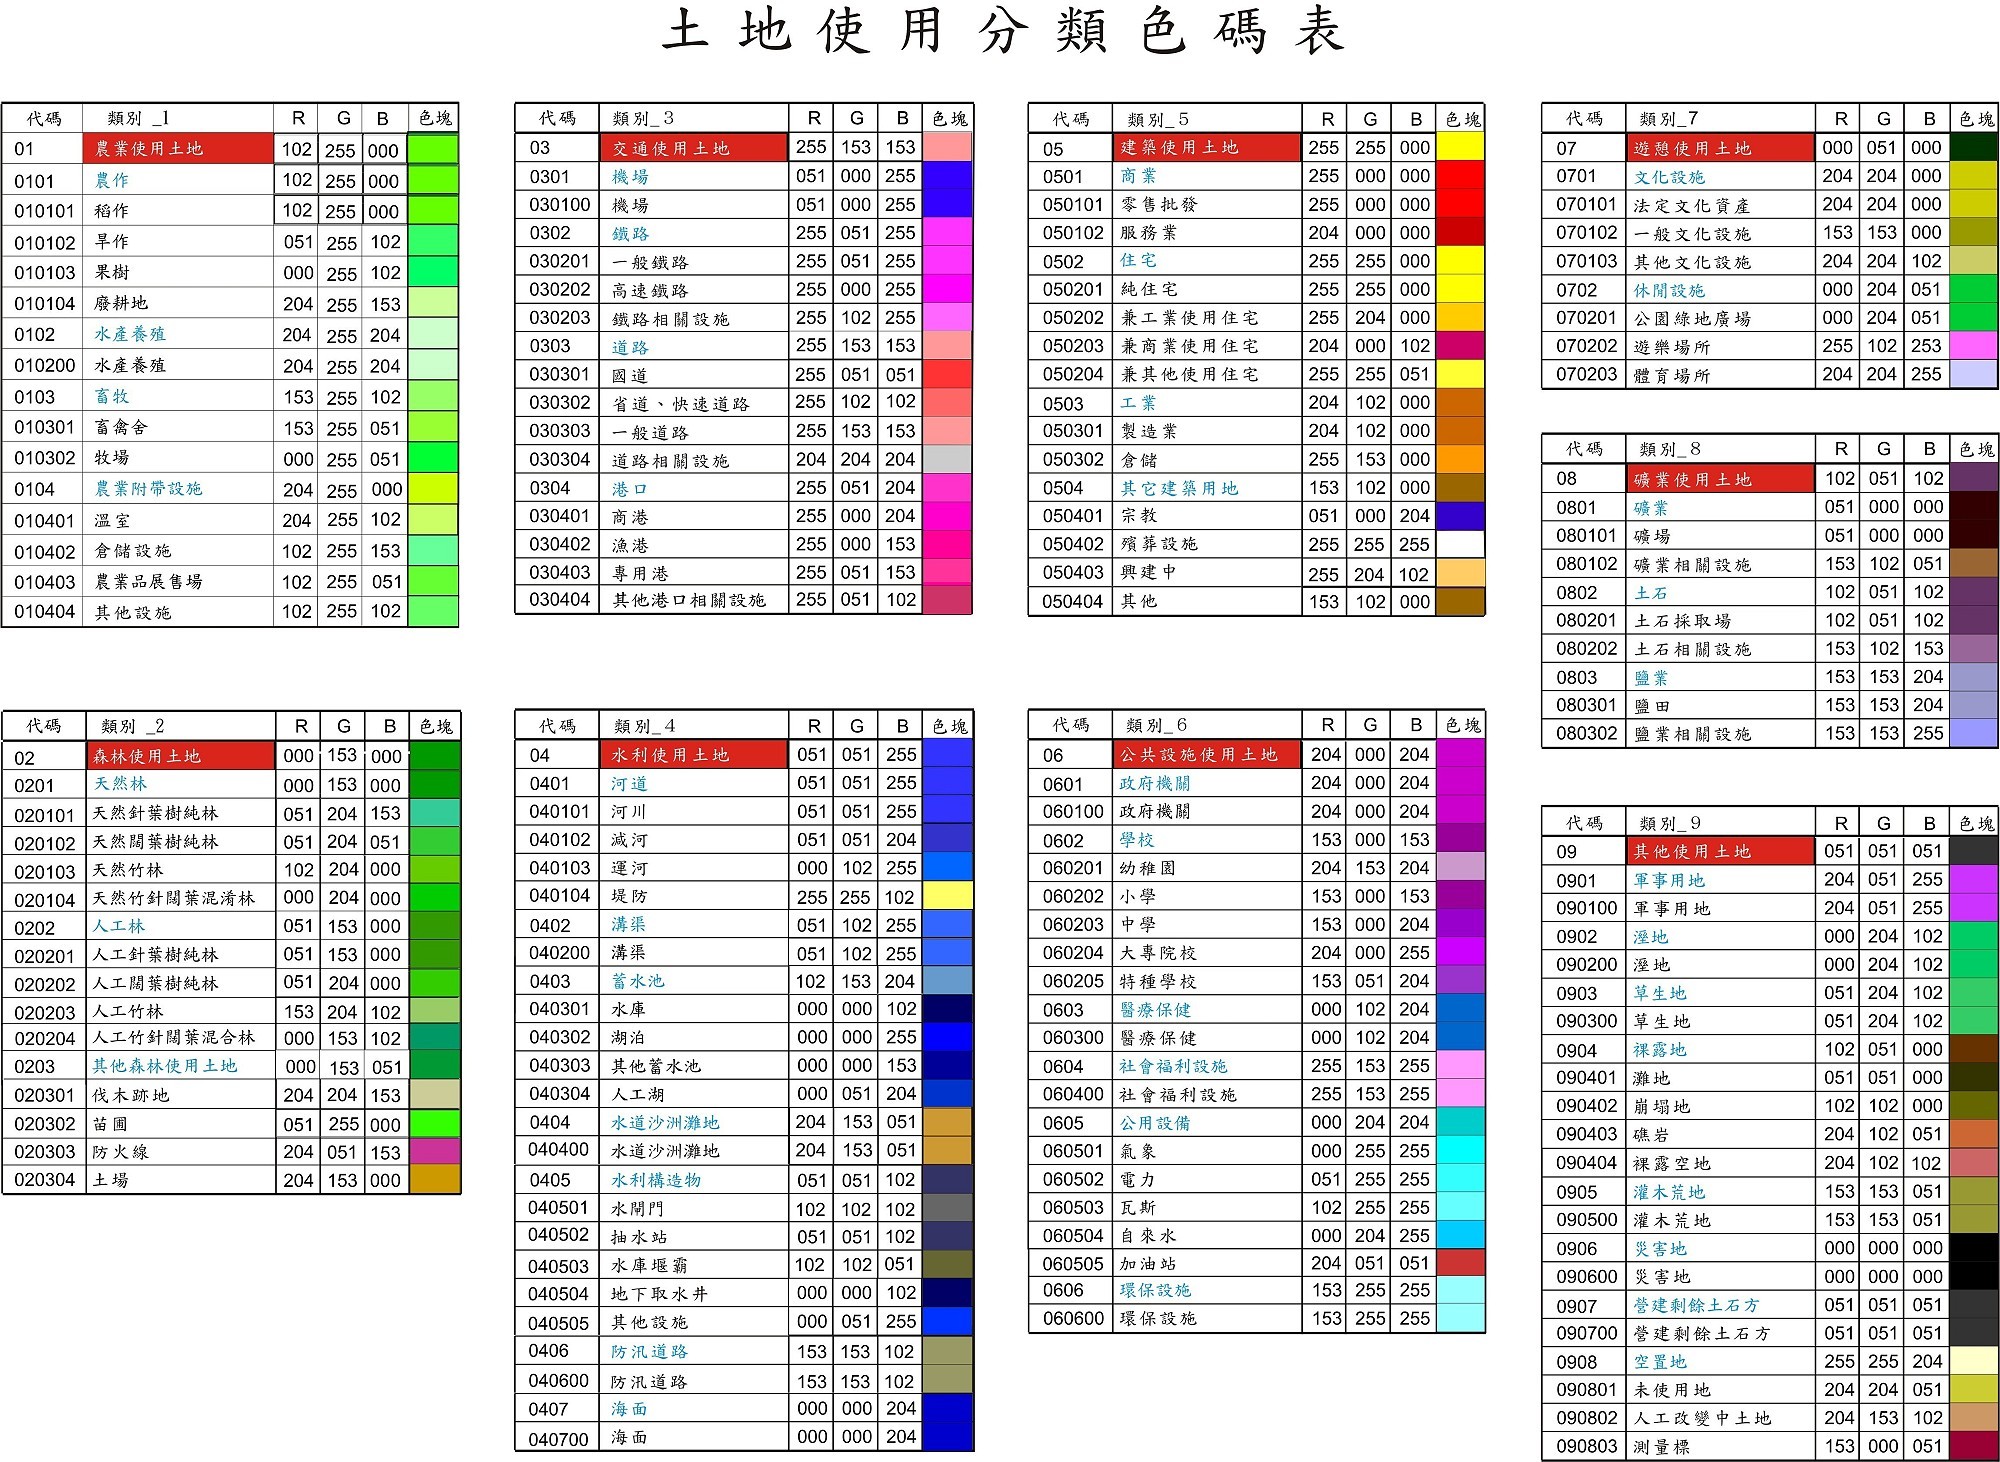 2006年 - 2015年土地使用分類色碼表